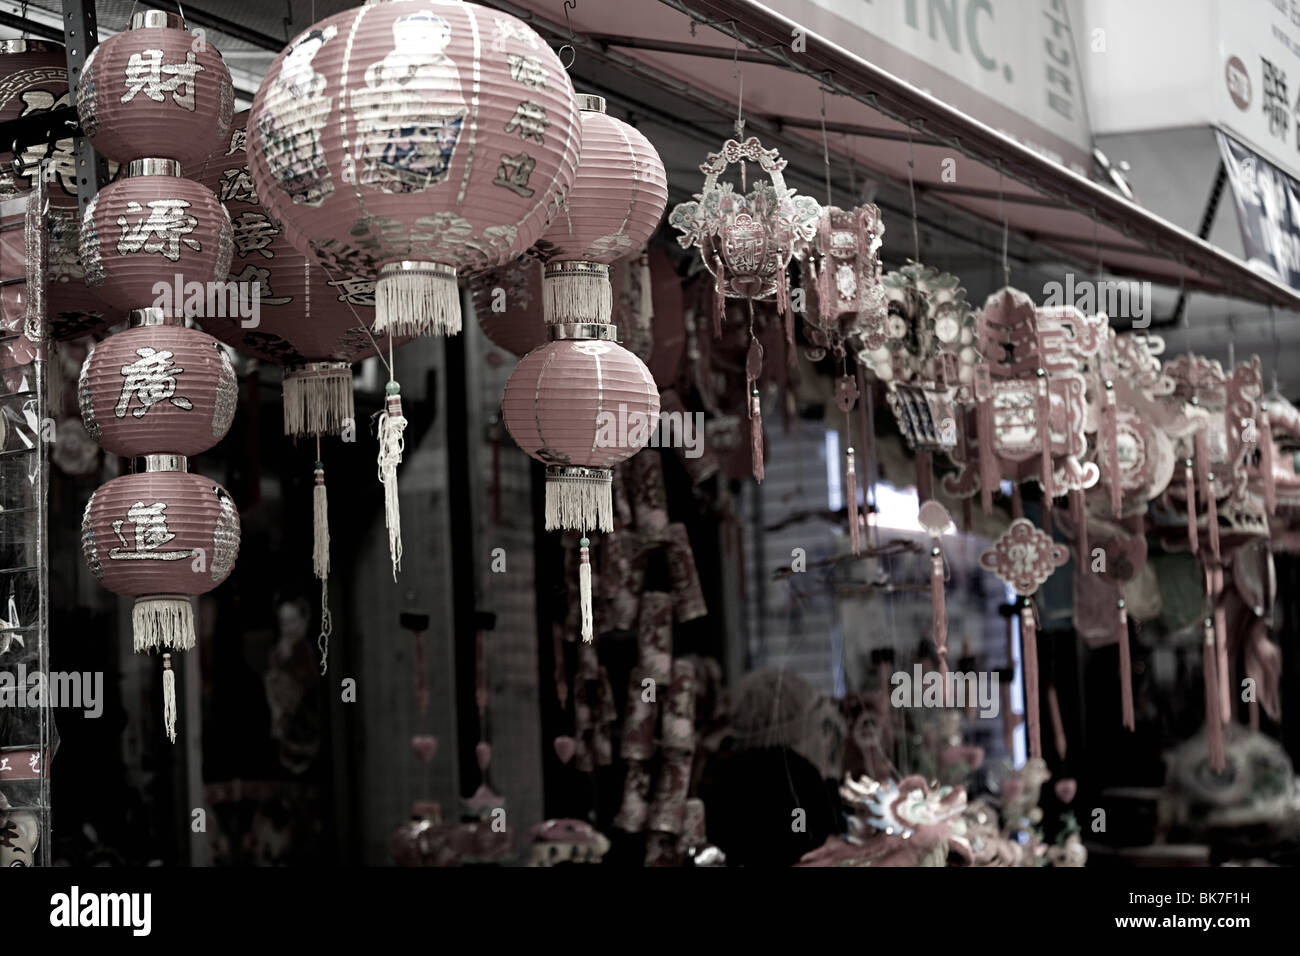 Lanternes dans China town new york Banque D'Images